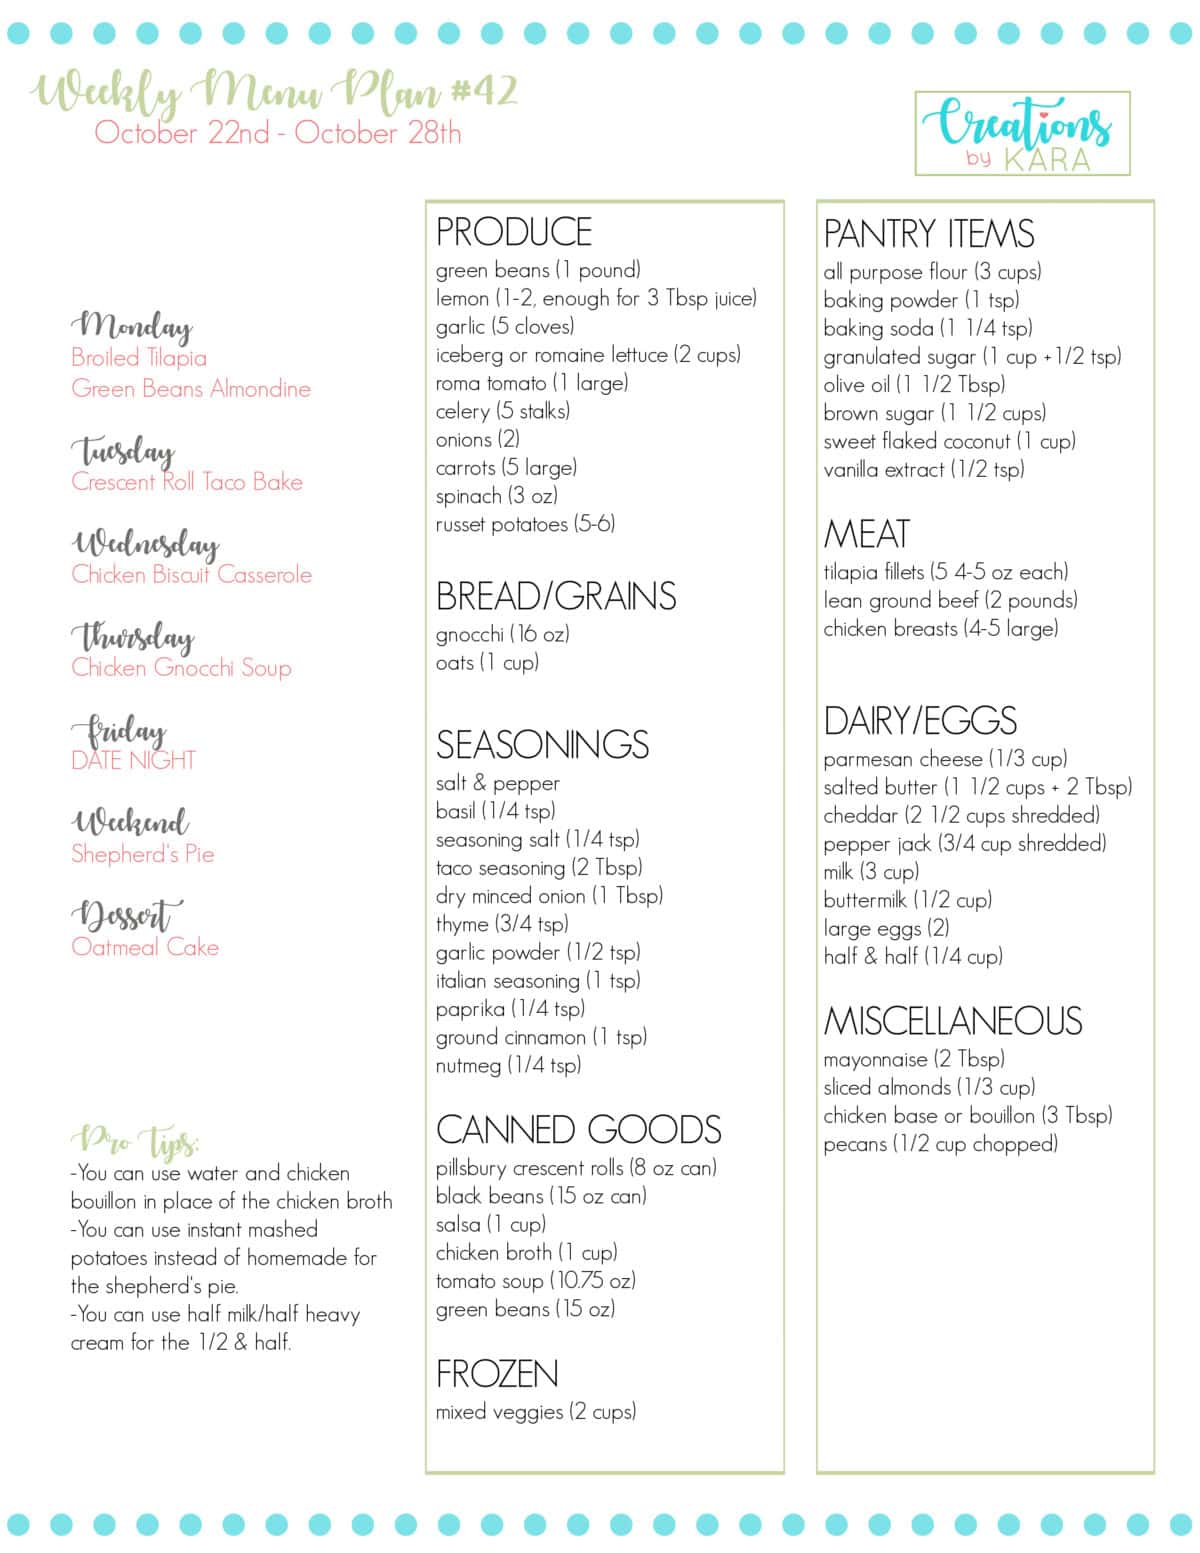 printable grocery list for menu plan week #42